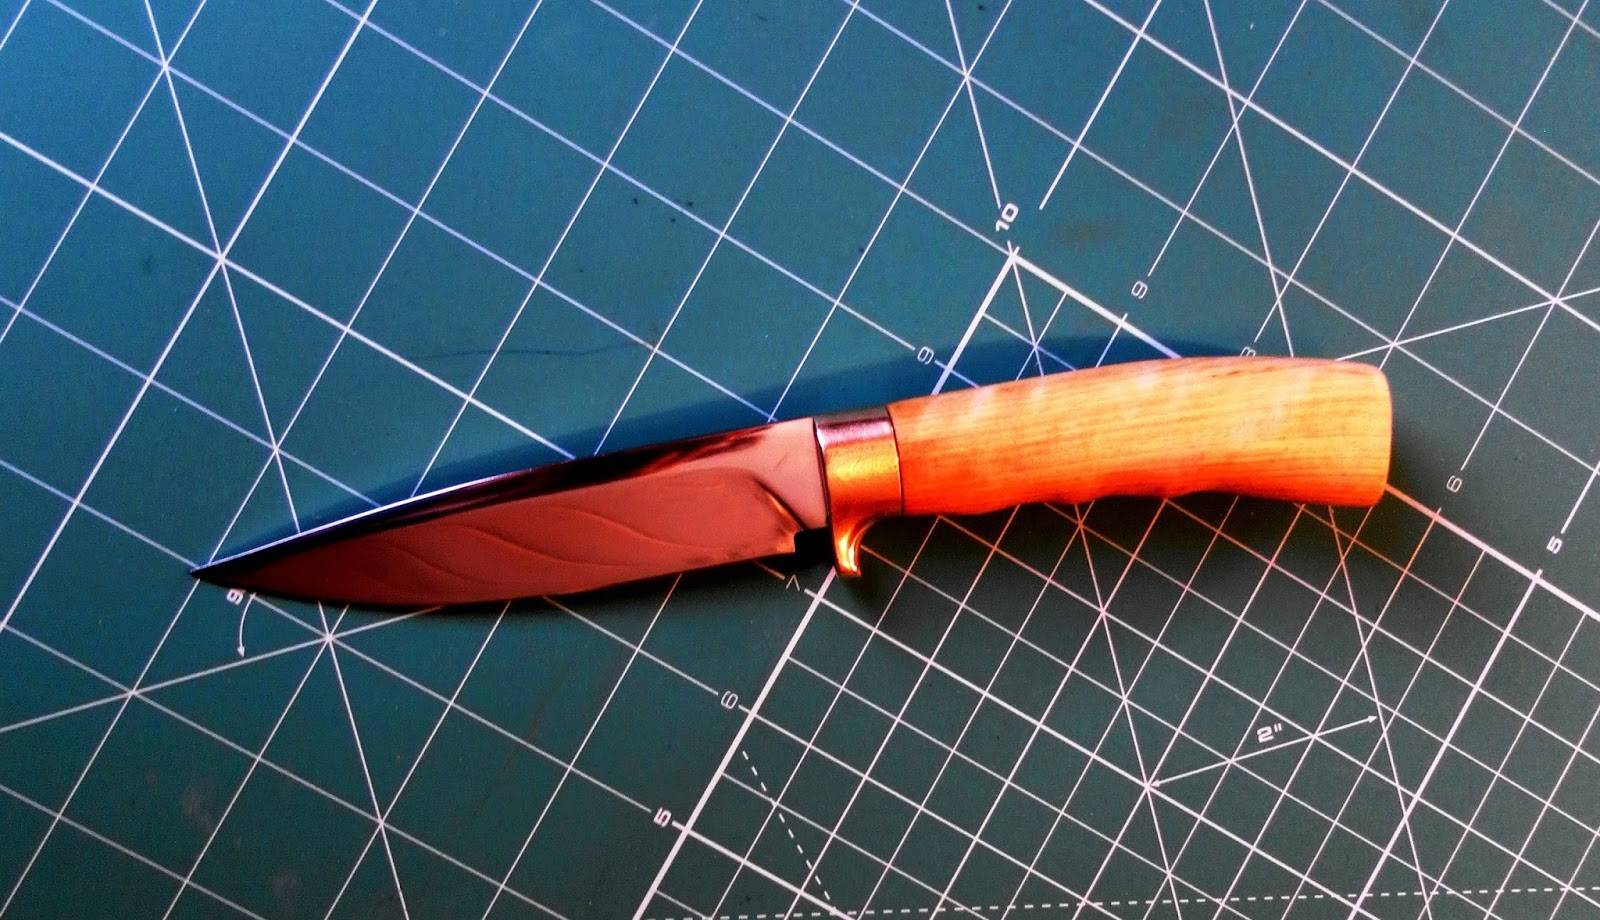 Ковка ножа - из чего лучше и проще начать изготовление